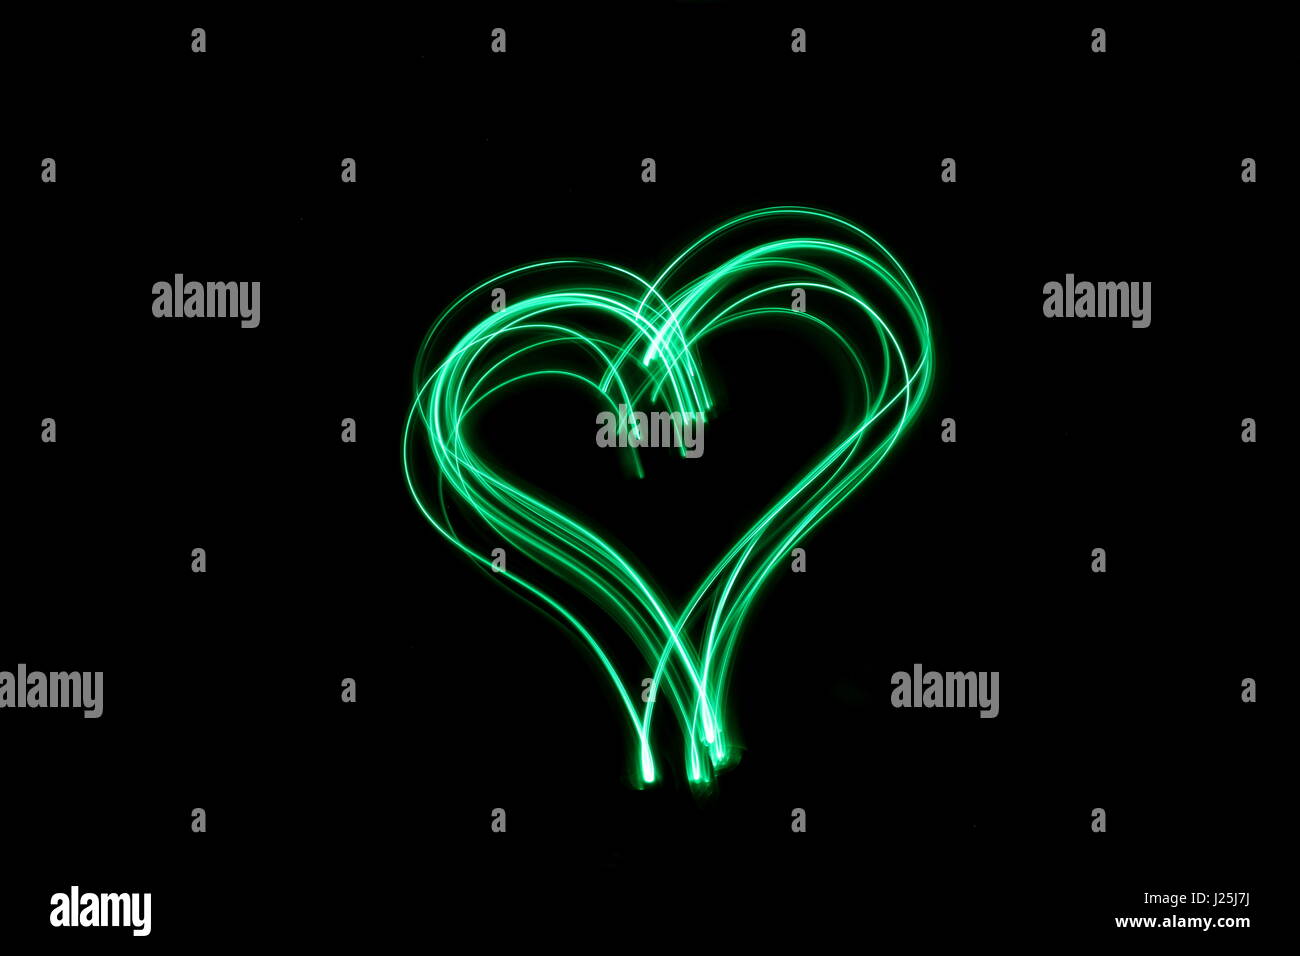 Lange Belichtung Foto von Neon Grün Farbe in einem Herzen Umriss der Form vor einem schwarzen Hintergrund. Licht Malerei Fotografie, abstrakte Farbe Stockfoto